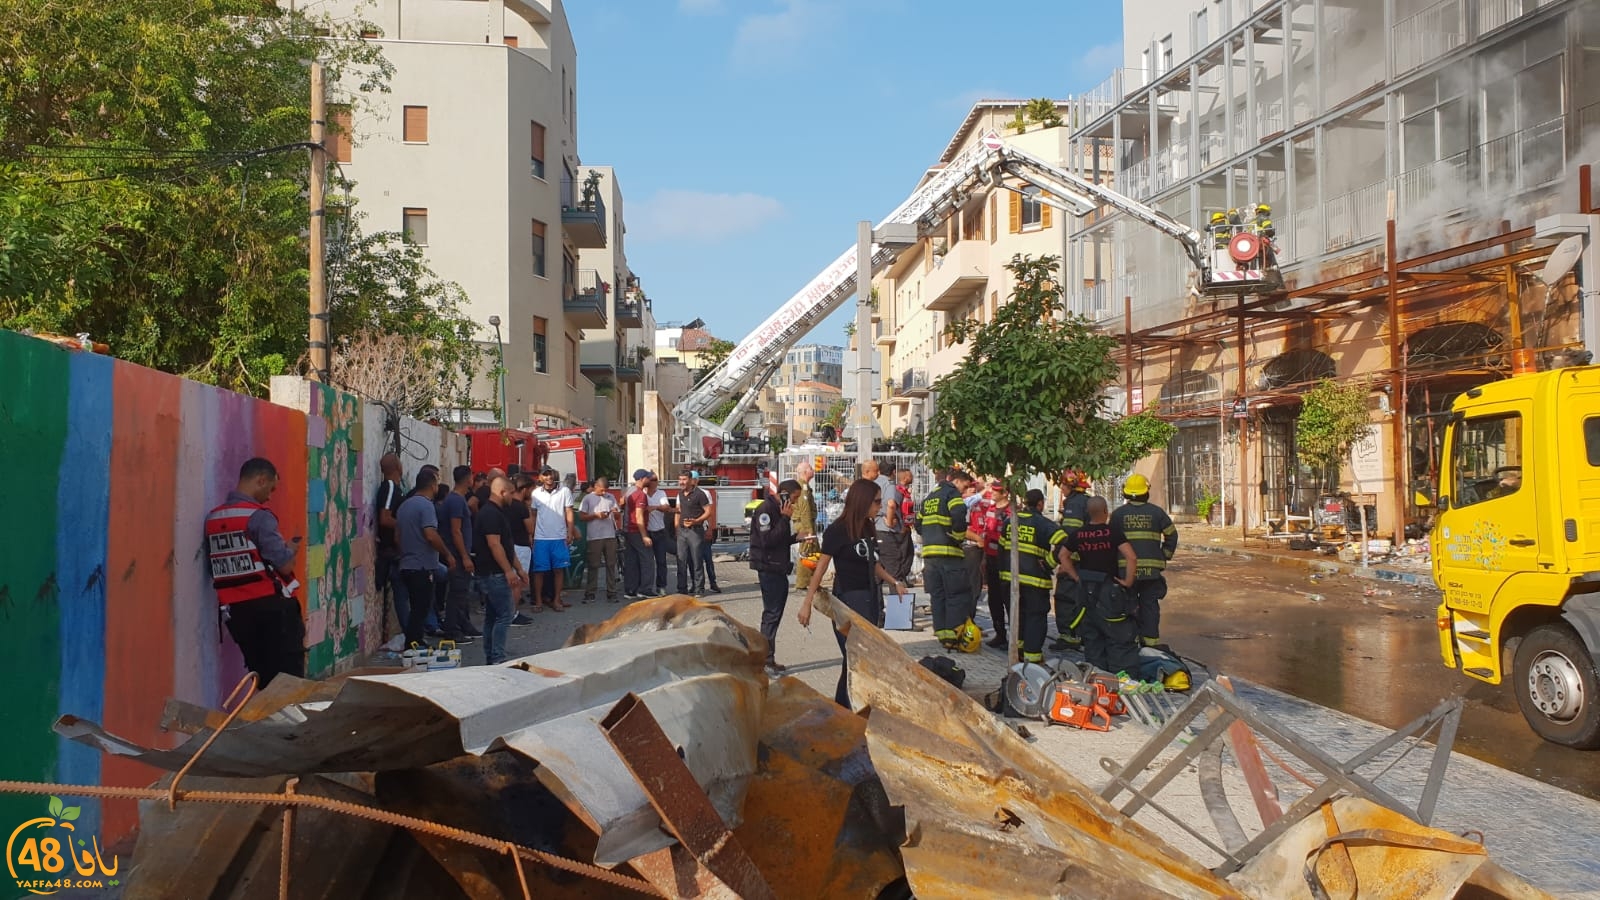 فيديو: مخاوف من انهيار مبنى اثر احتراقه بيافا وأنباء غير مؤكدة عن محتجزين